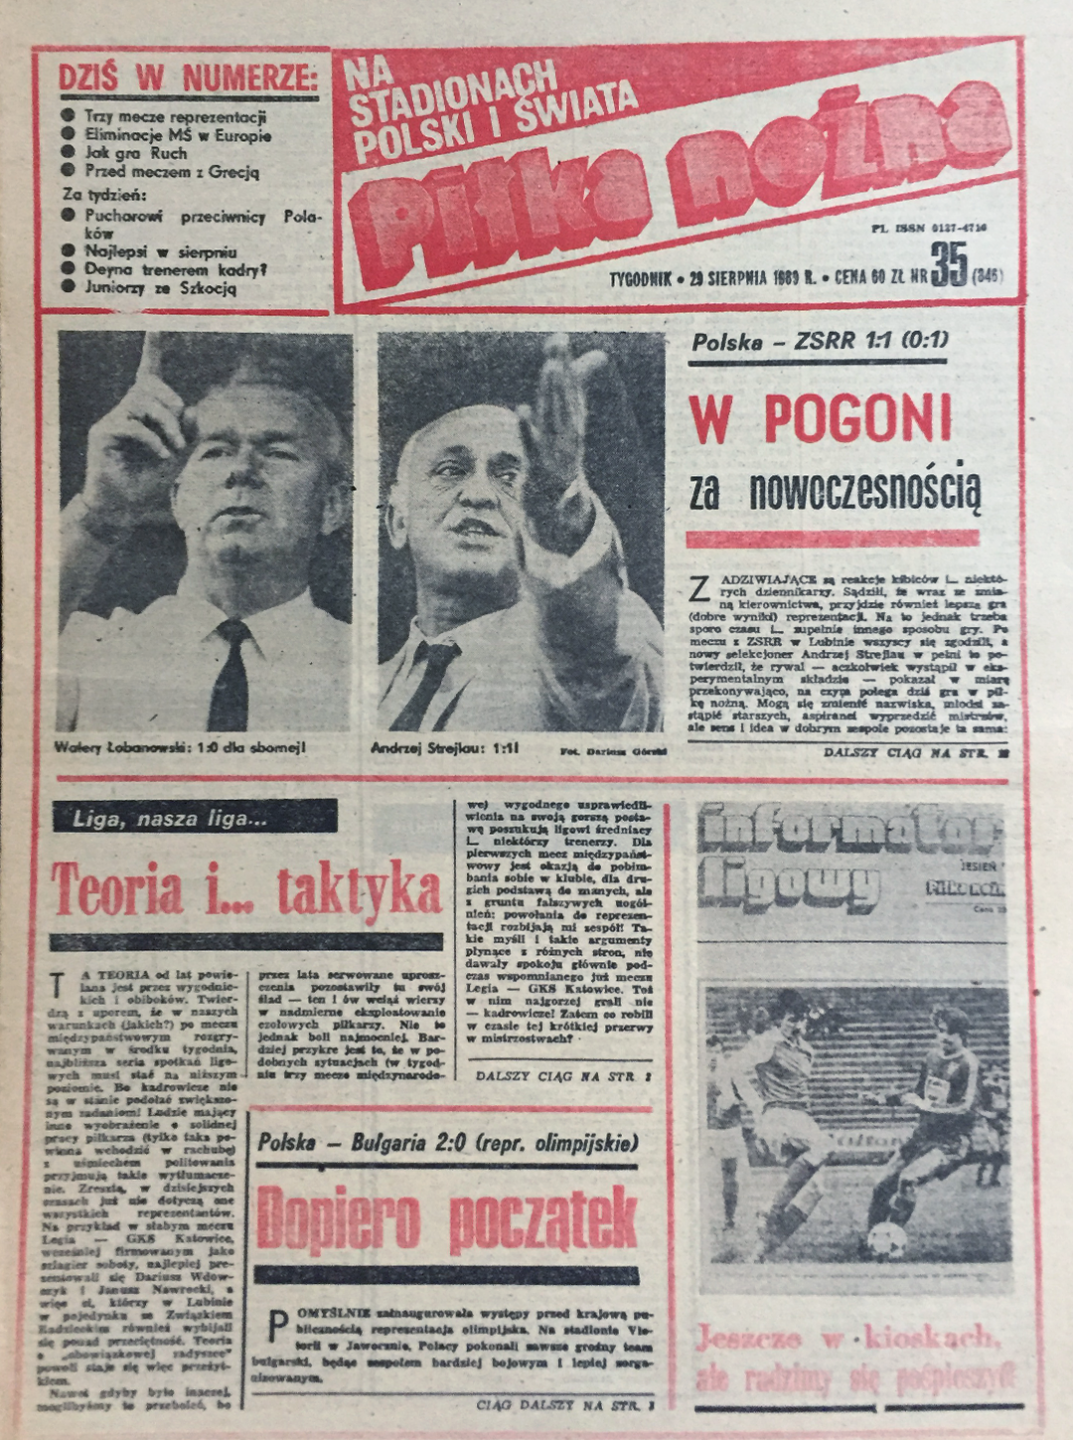 Okładka Piłki Nożnej po meczu Polska - ZSRR 1:1 (23.08.1989)